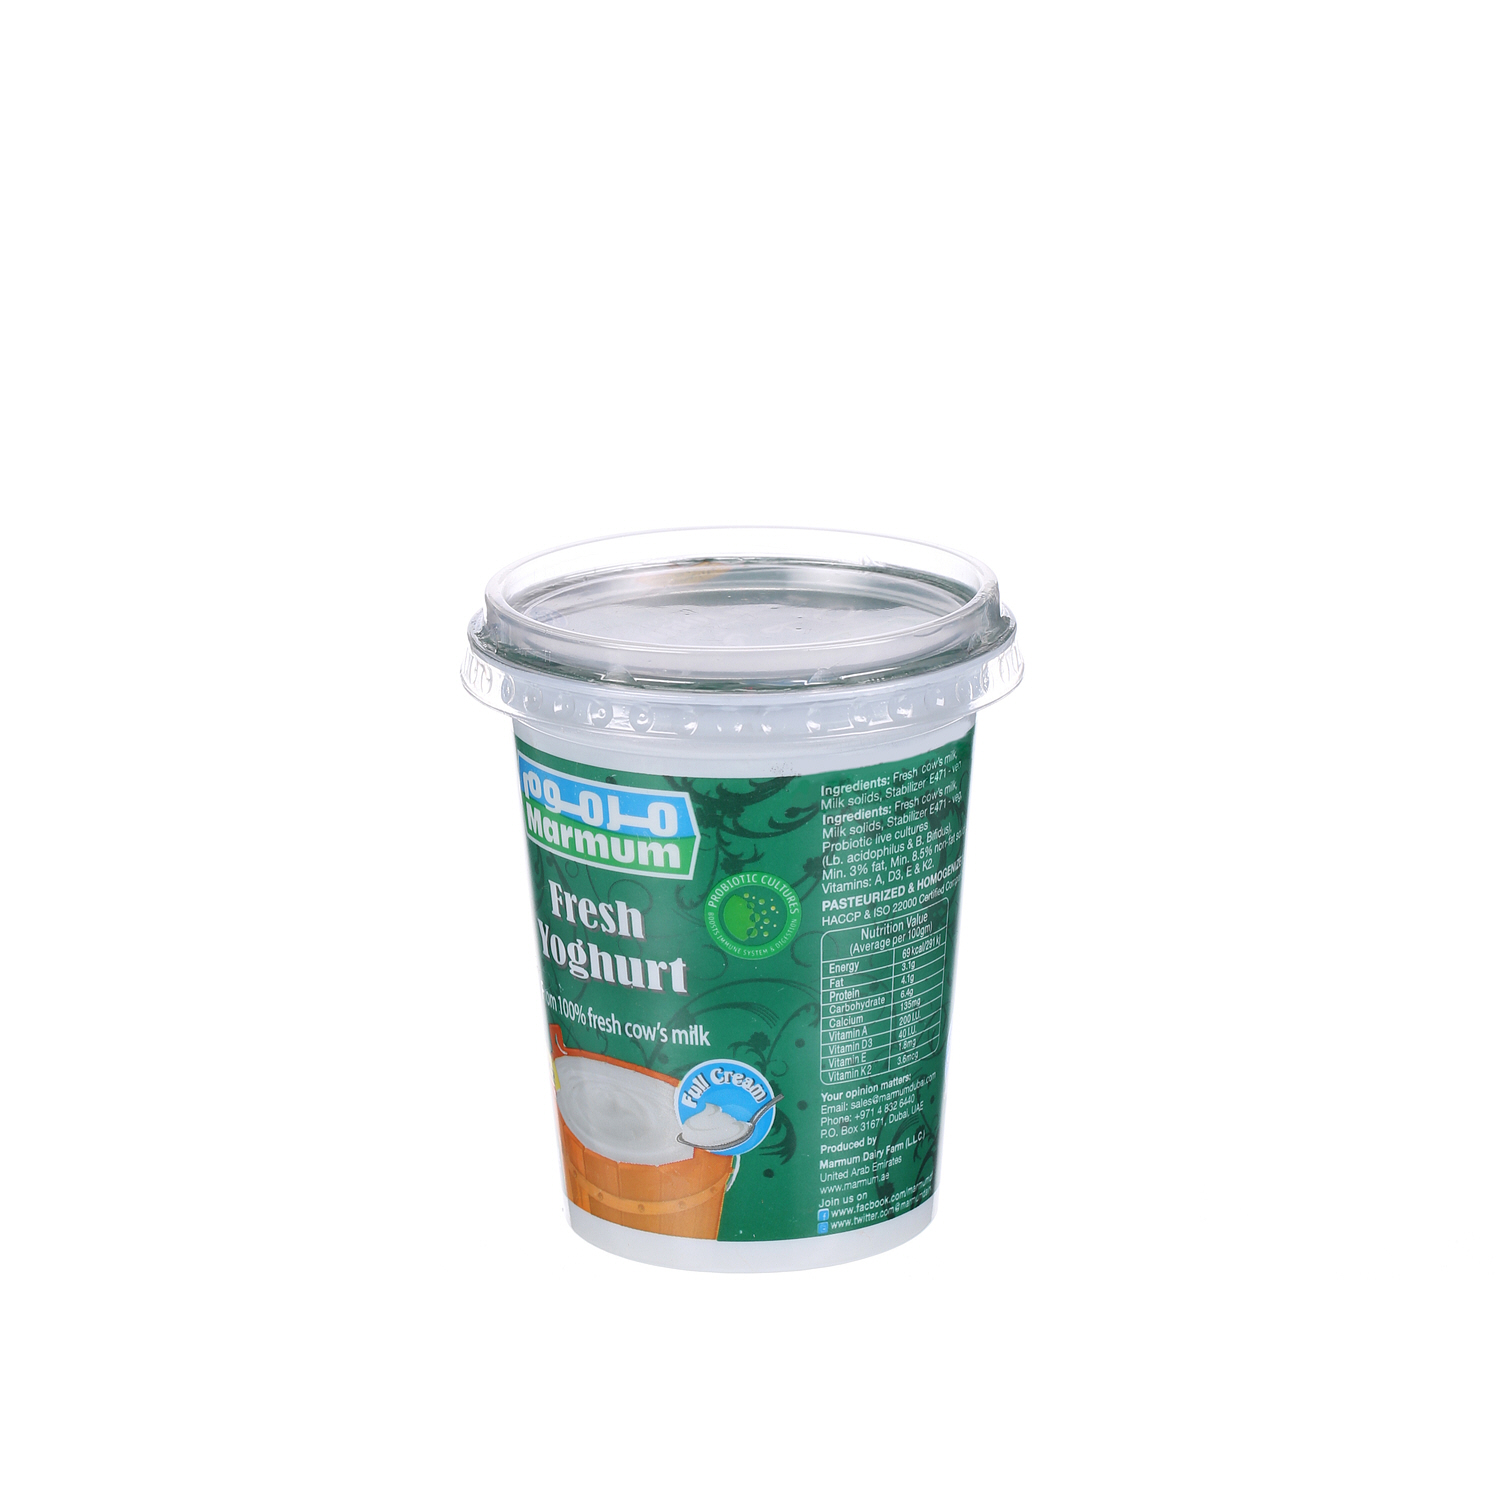 Marmum Fresh Yoghurt Full Fat 400 g